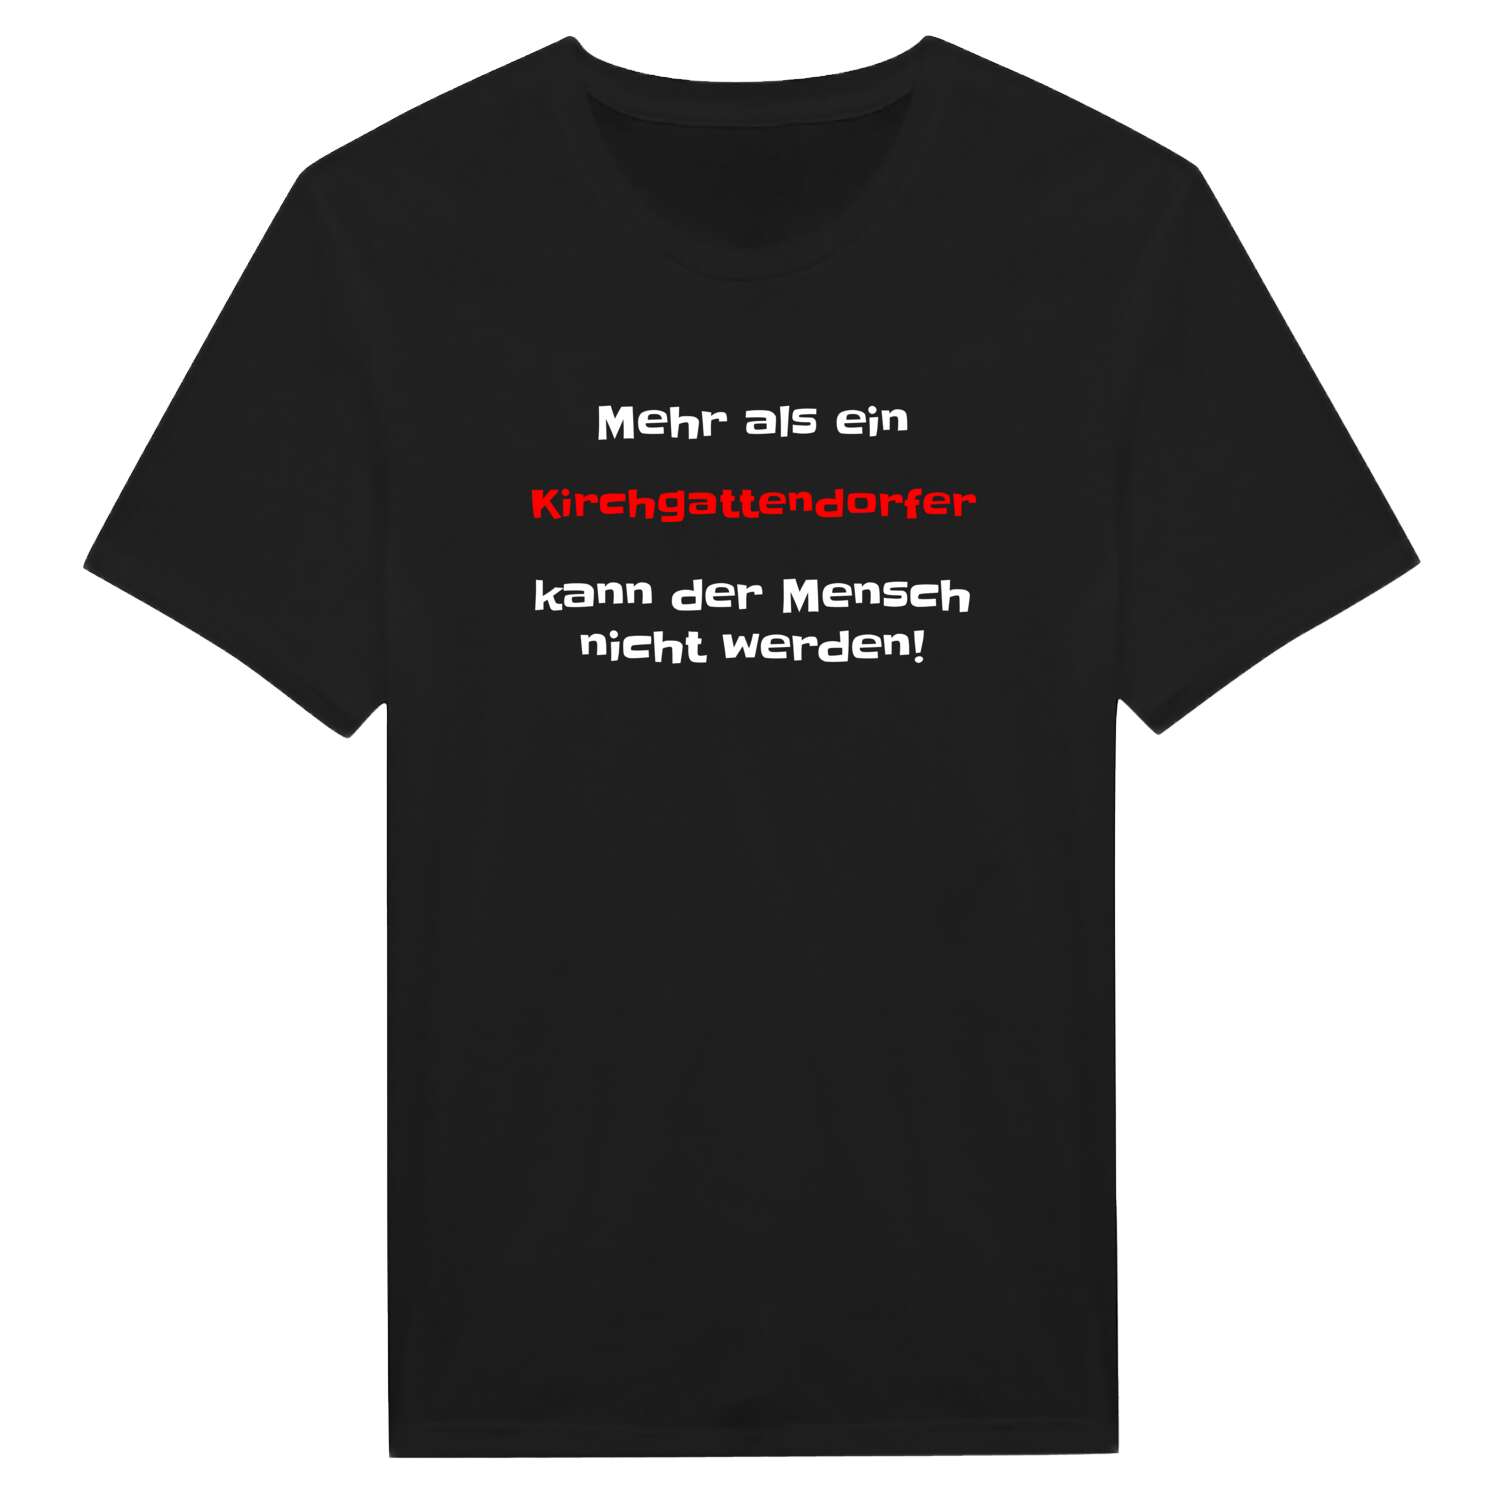 Kirchgattendorf T-Shirt »Mehr als ein«